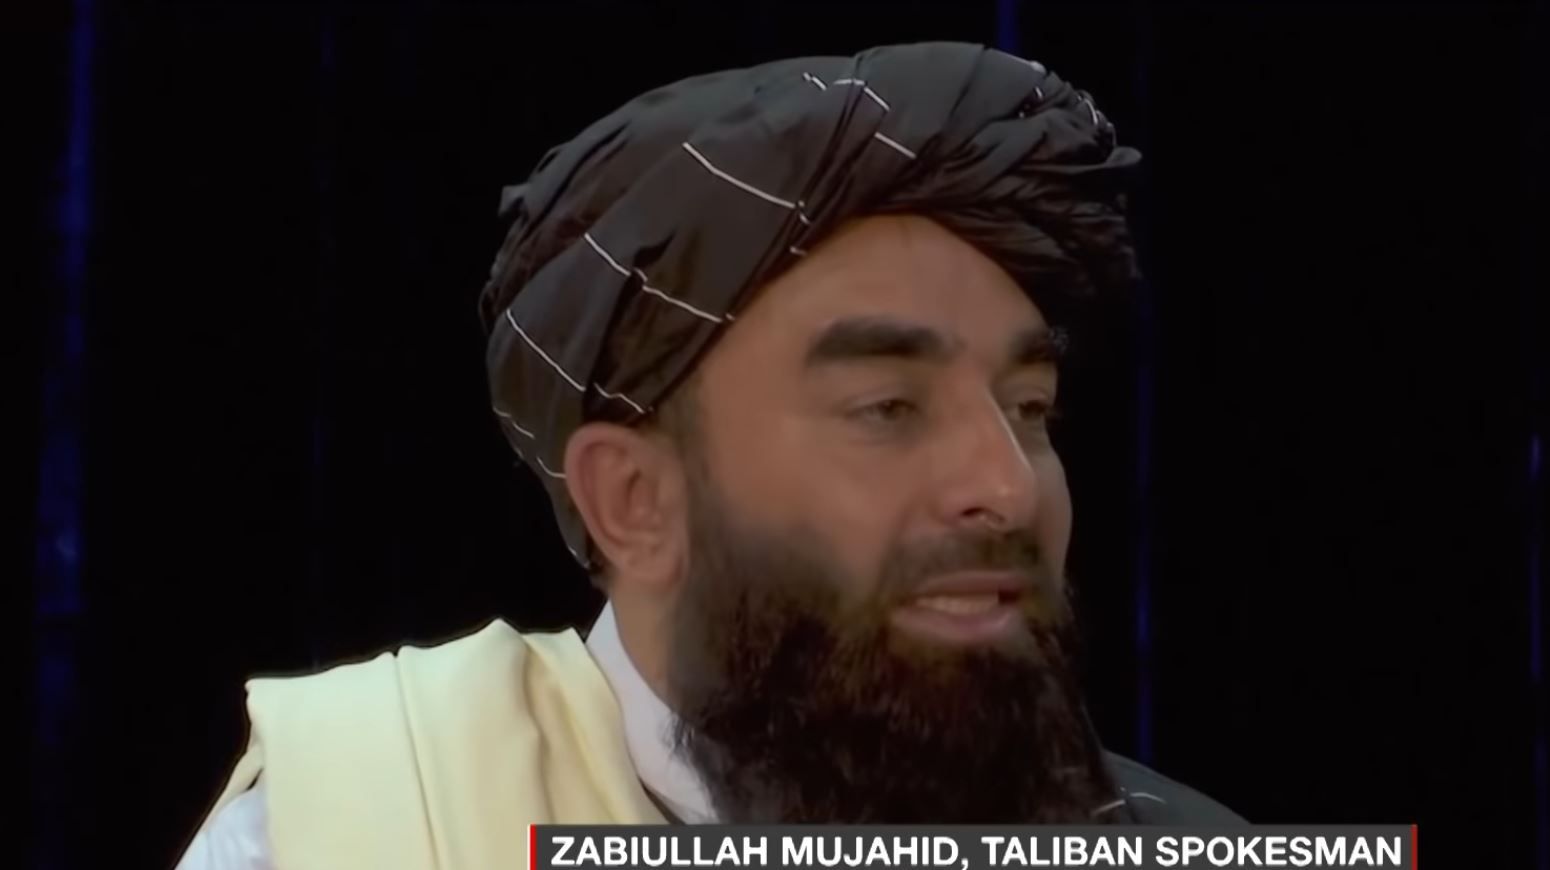 Taliban presser: Lies & propaganda